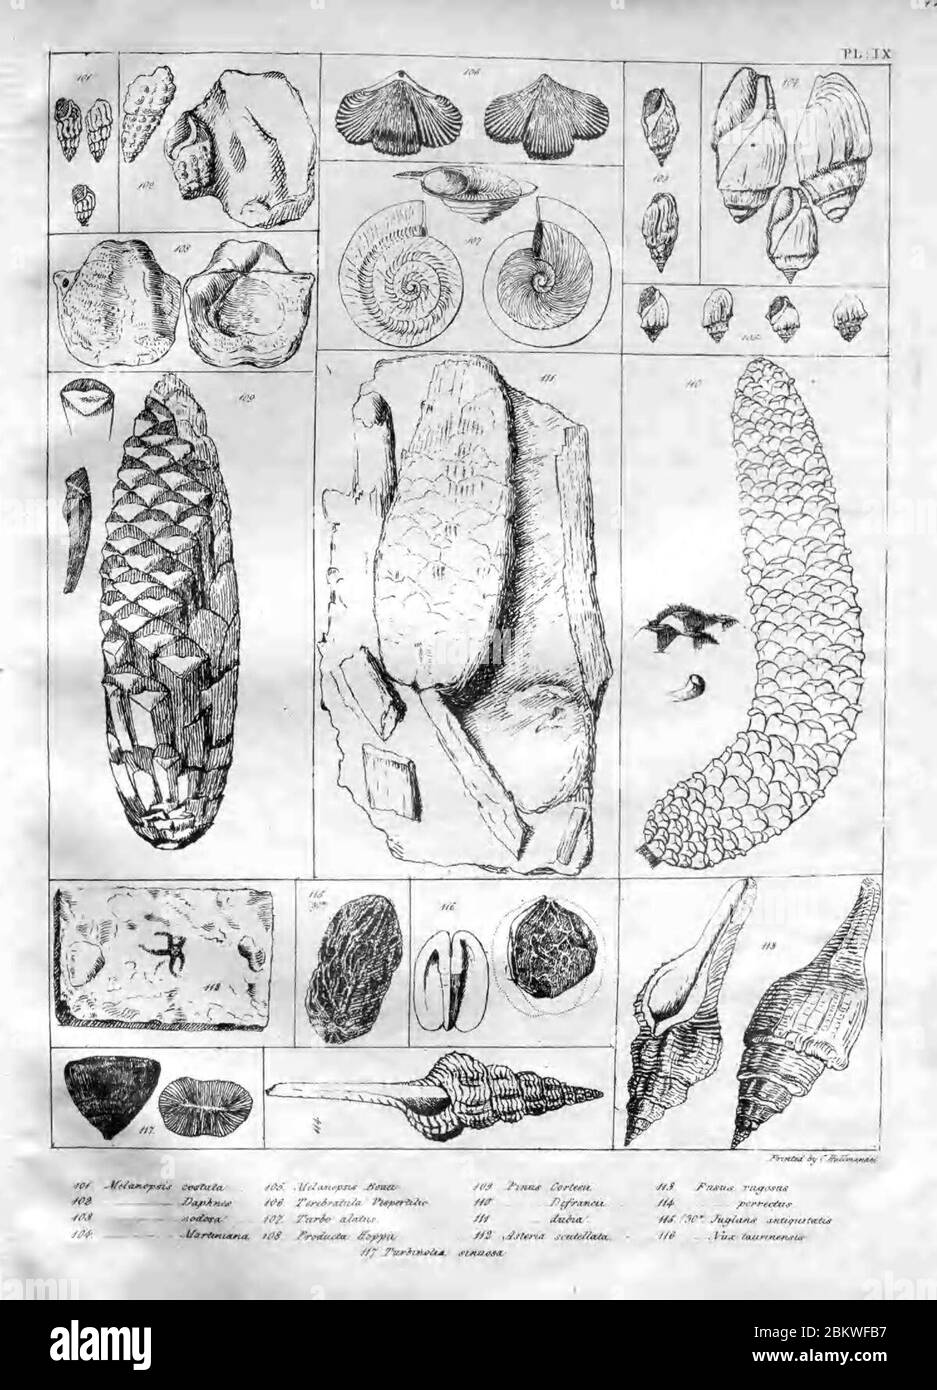 Icones fossilium sectiles (Plate IX) Stock Photo